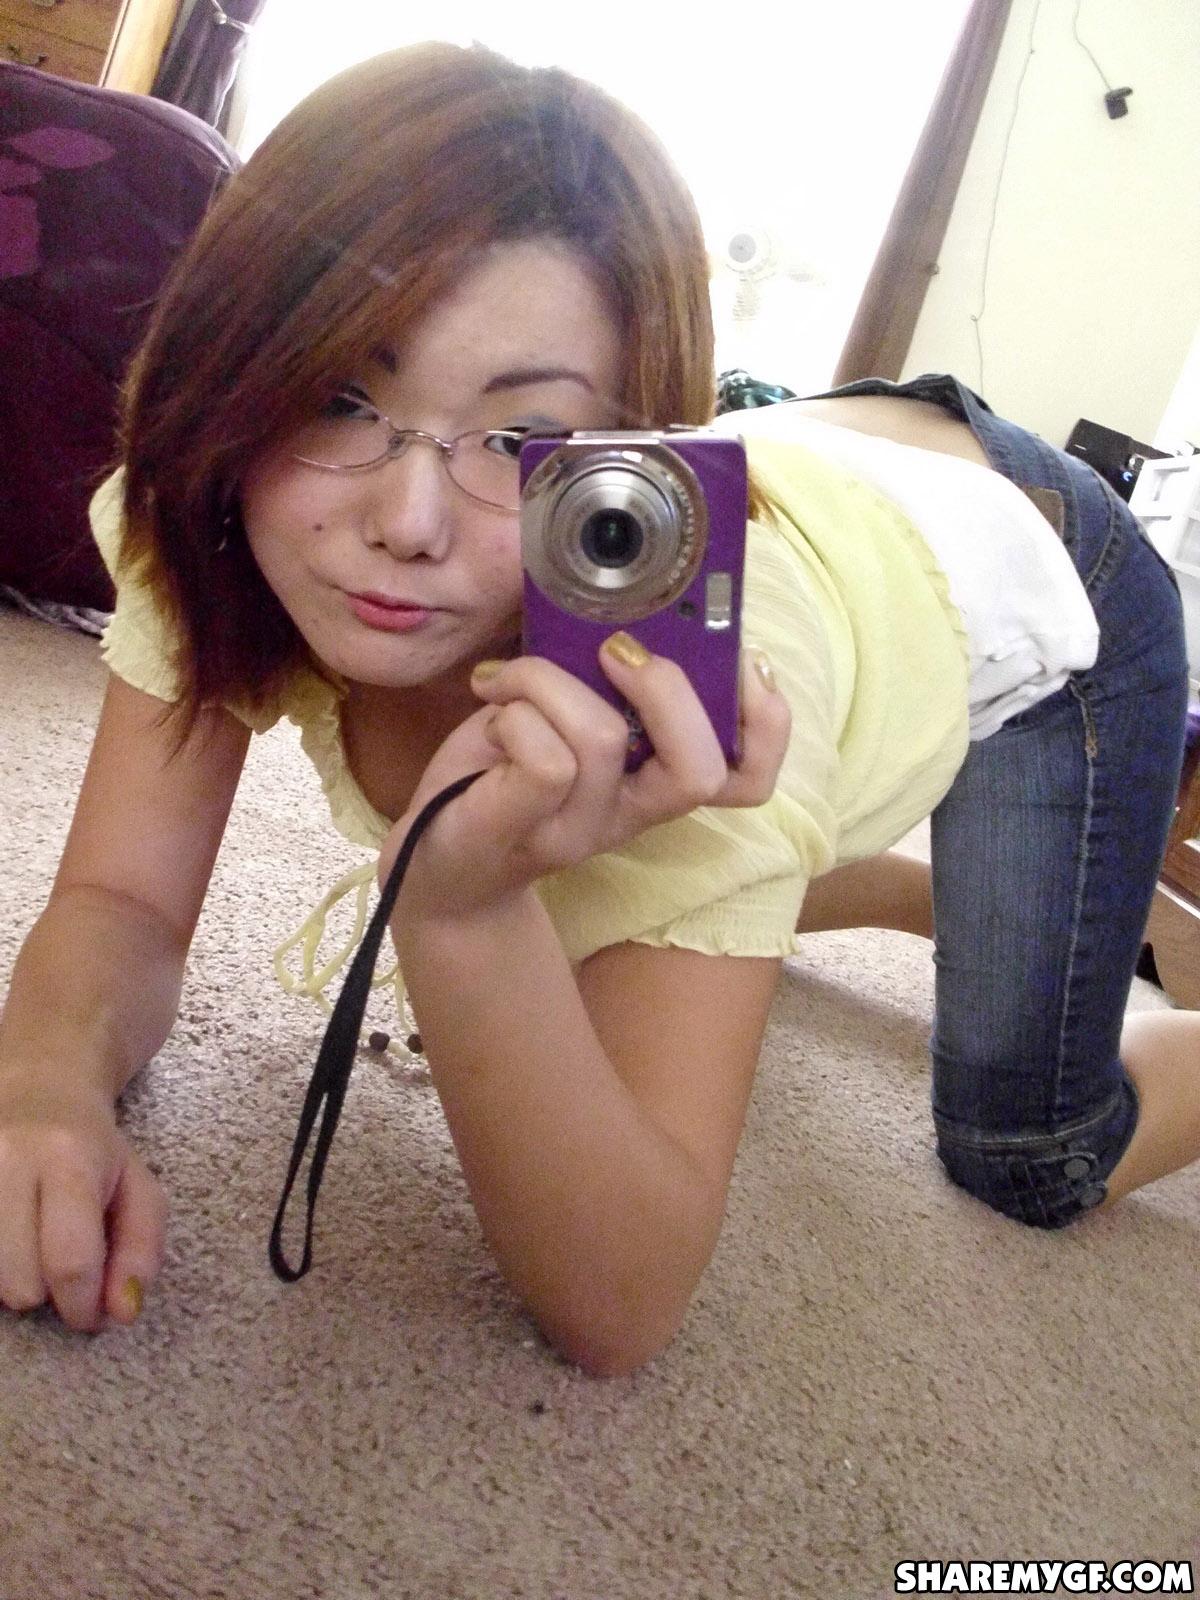 Asian coed shares hot selfies taken in her dorm room #60795828